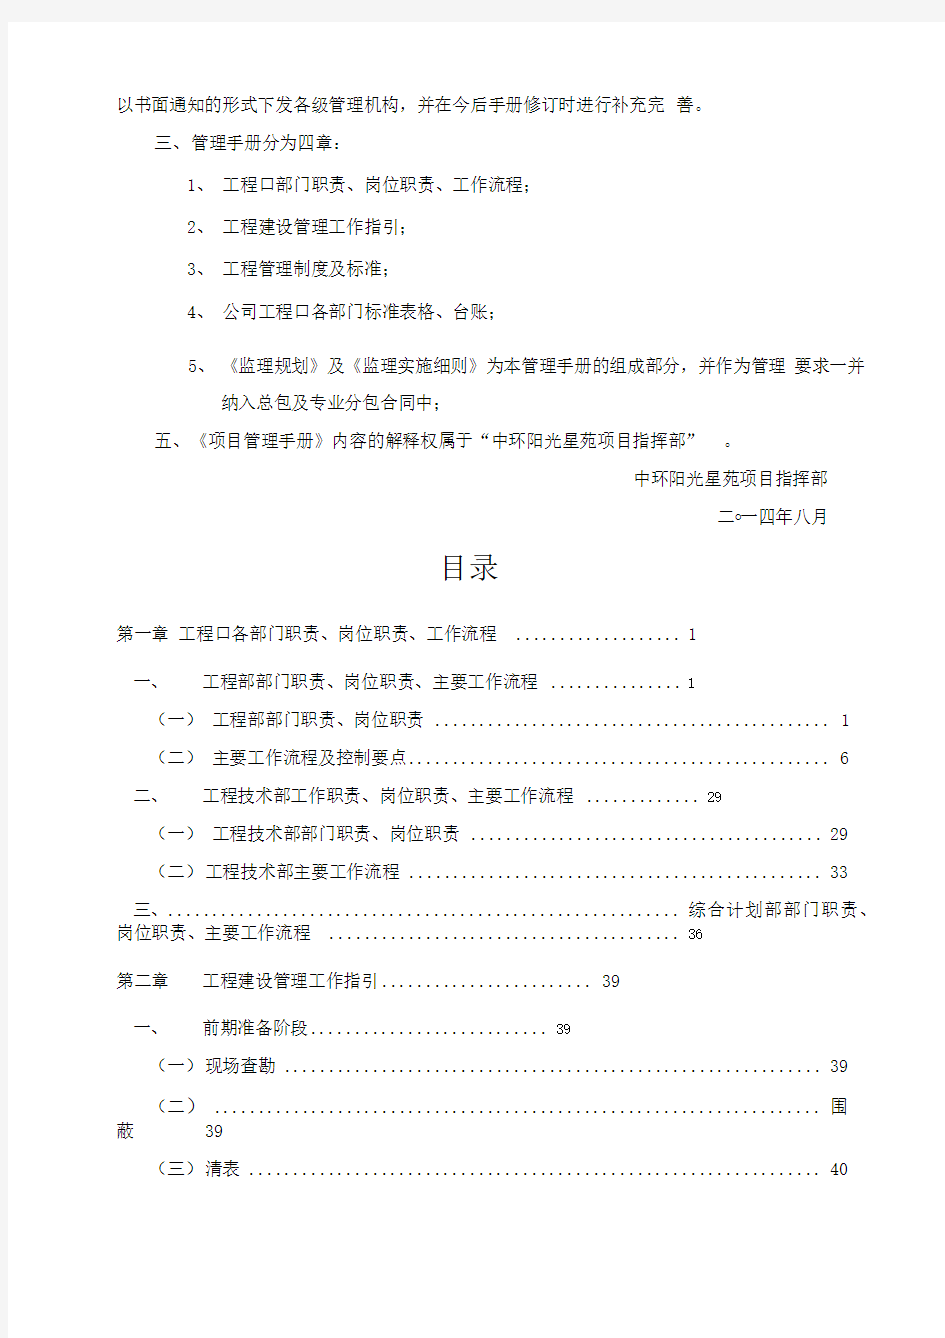 工程项目管理手册(打印版)